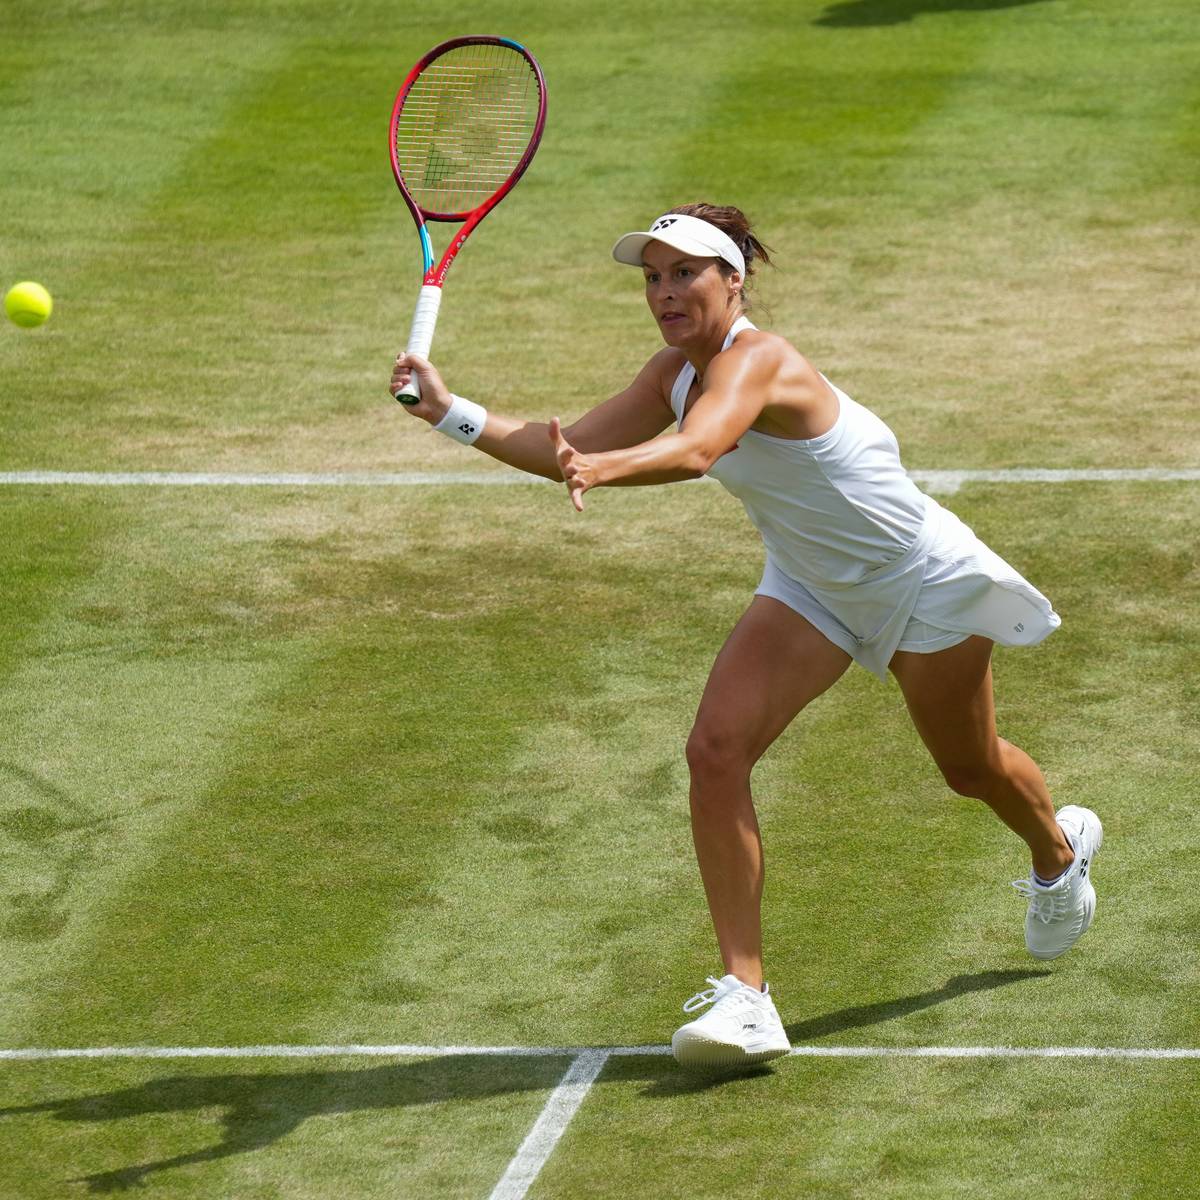 Tatjana Maria ist Mutter von zwei Töchtern und eine extrem gute Rasenspielerin. In Wimbledon steht sie erstmals in ihrer Karriere im Achtelfinale - und nervt die Gegnerinnen mit einem besonderen Schlag.